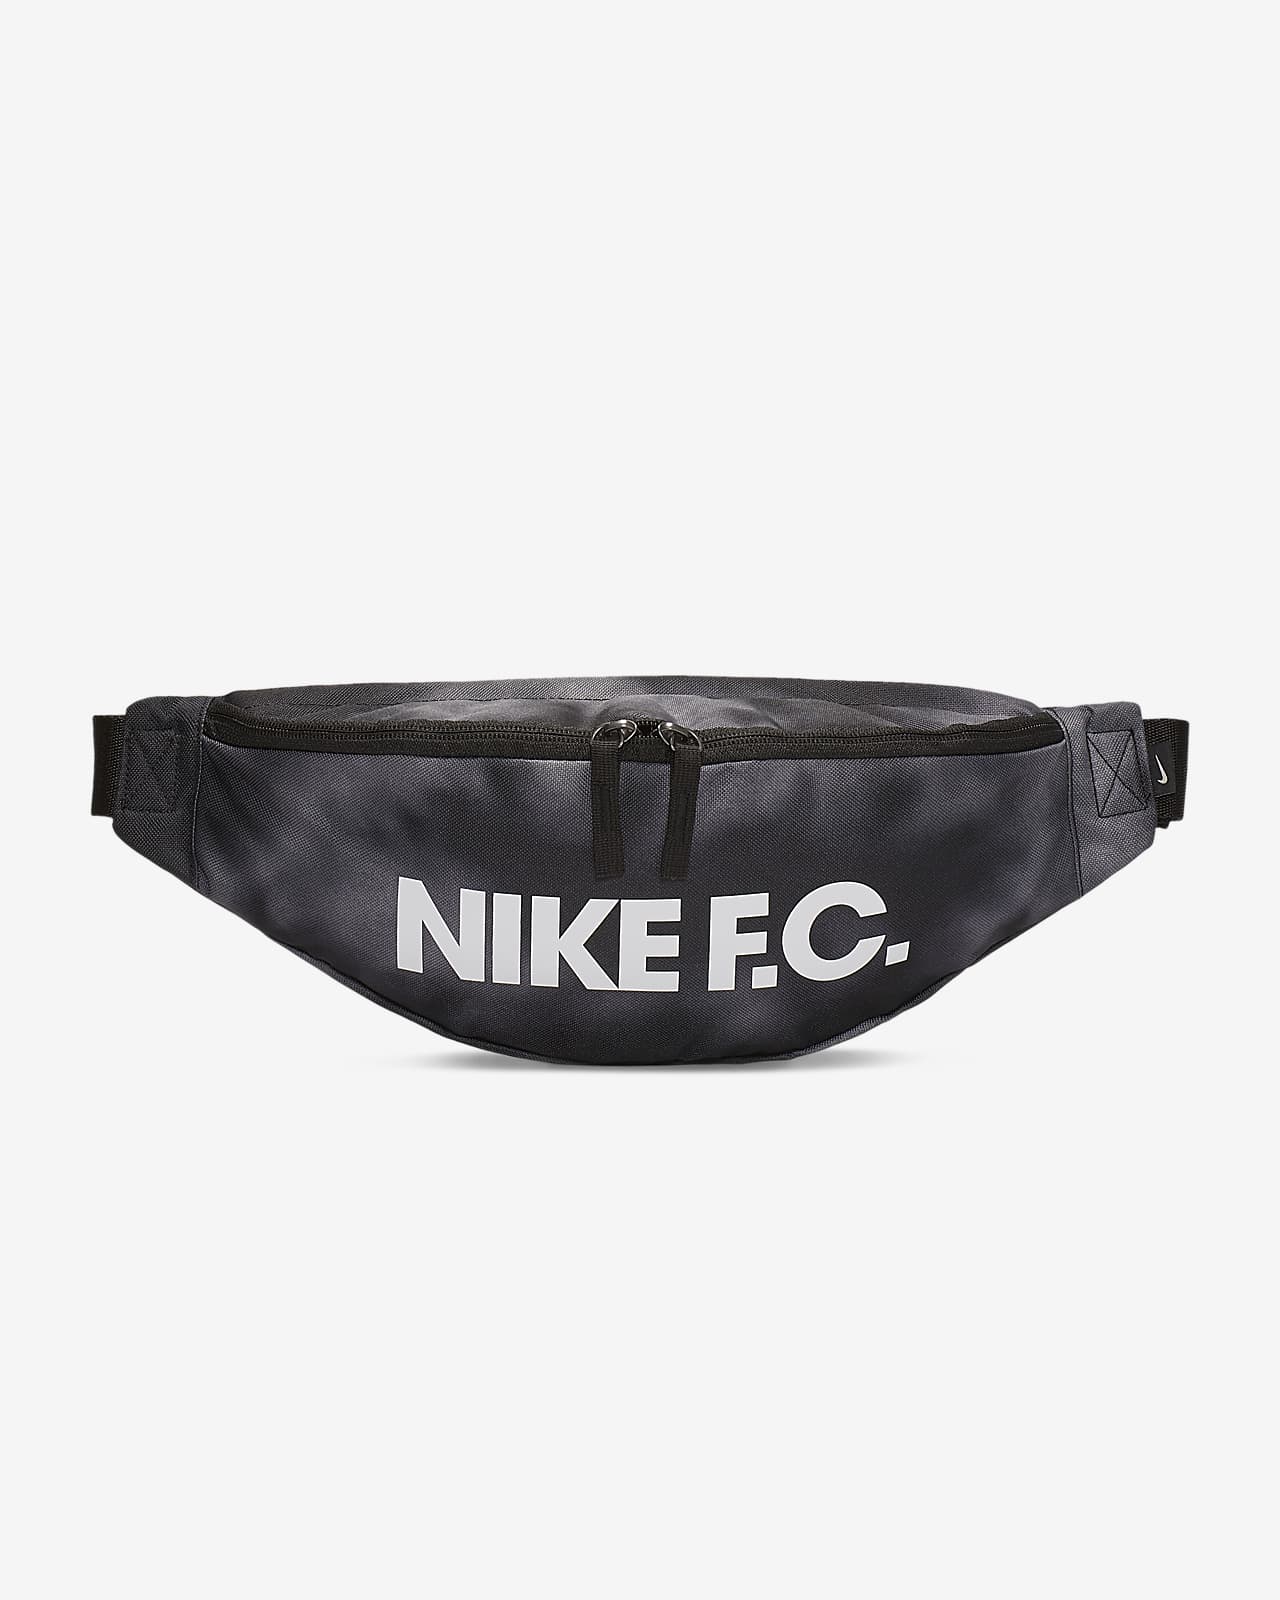 Nike F.C. Hip Pack. Nike LU